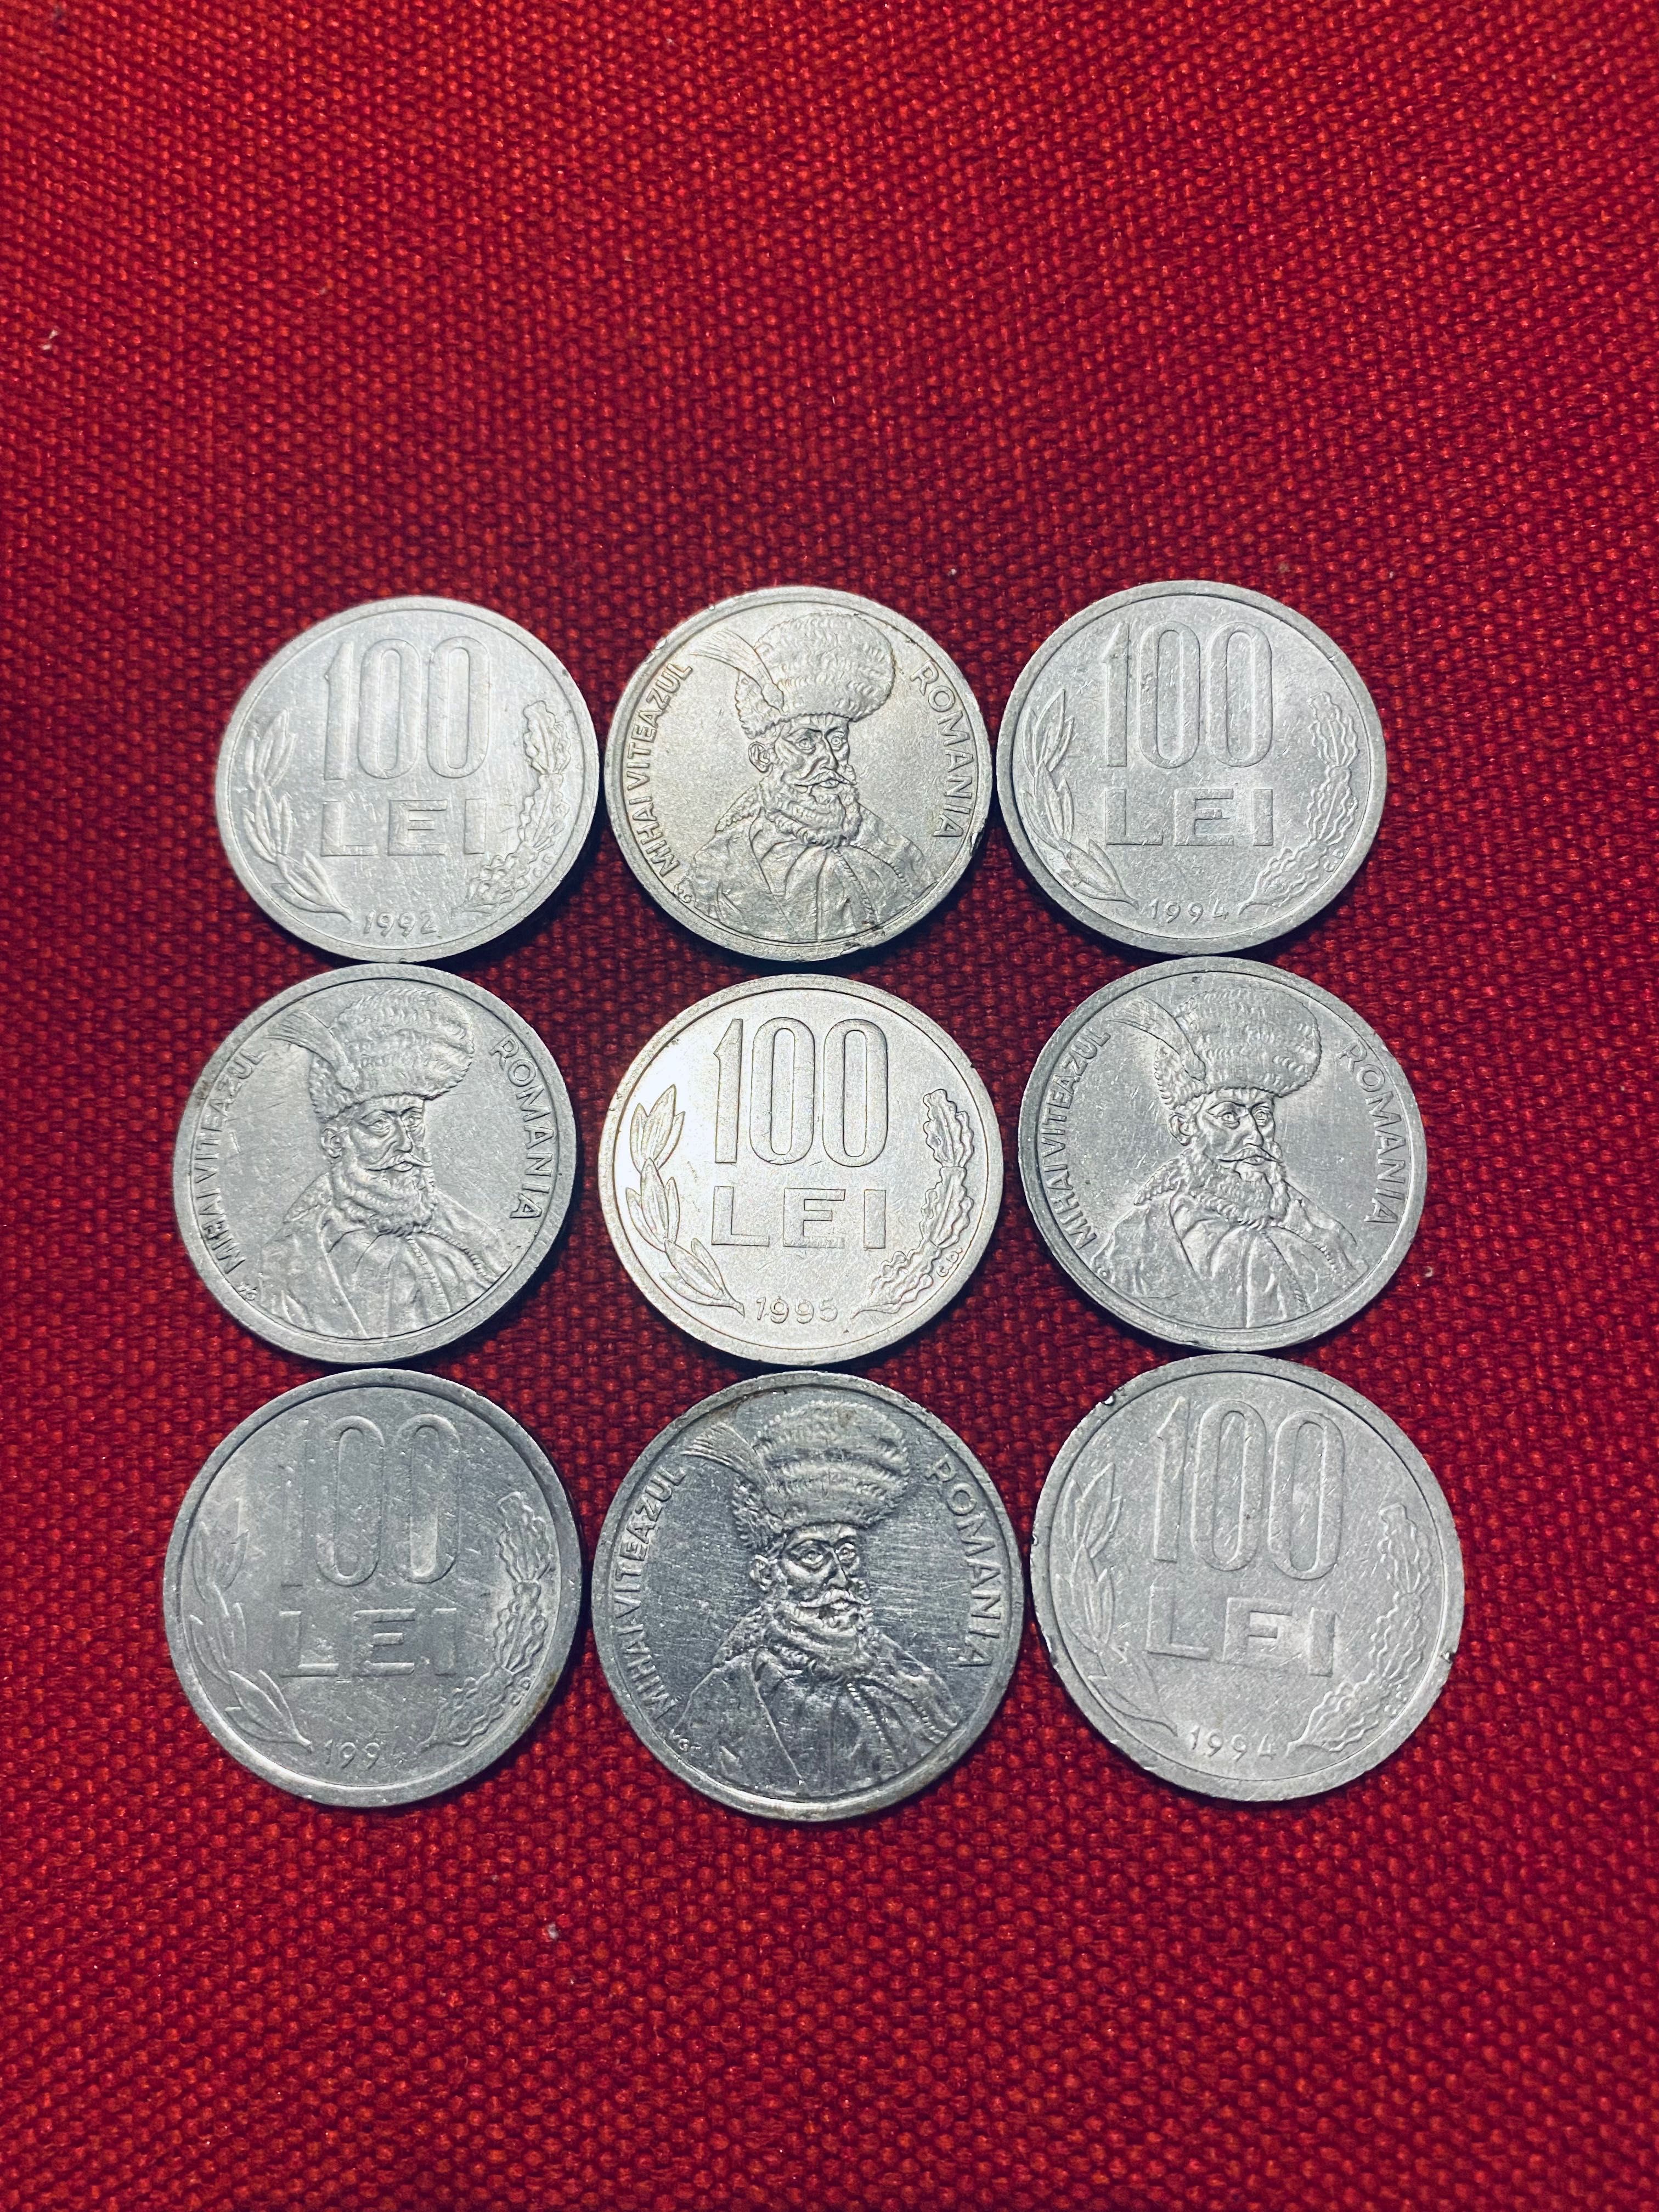 Vând monede de 100 lei, an 1995 cu Mihai Viteazul